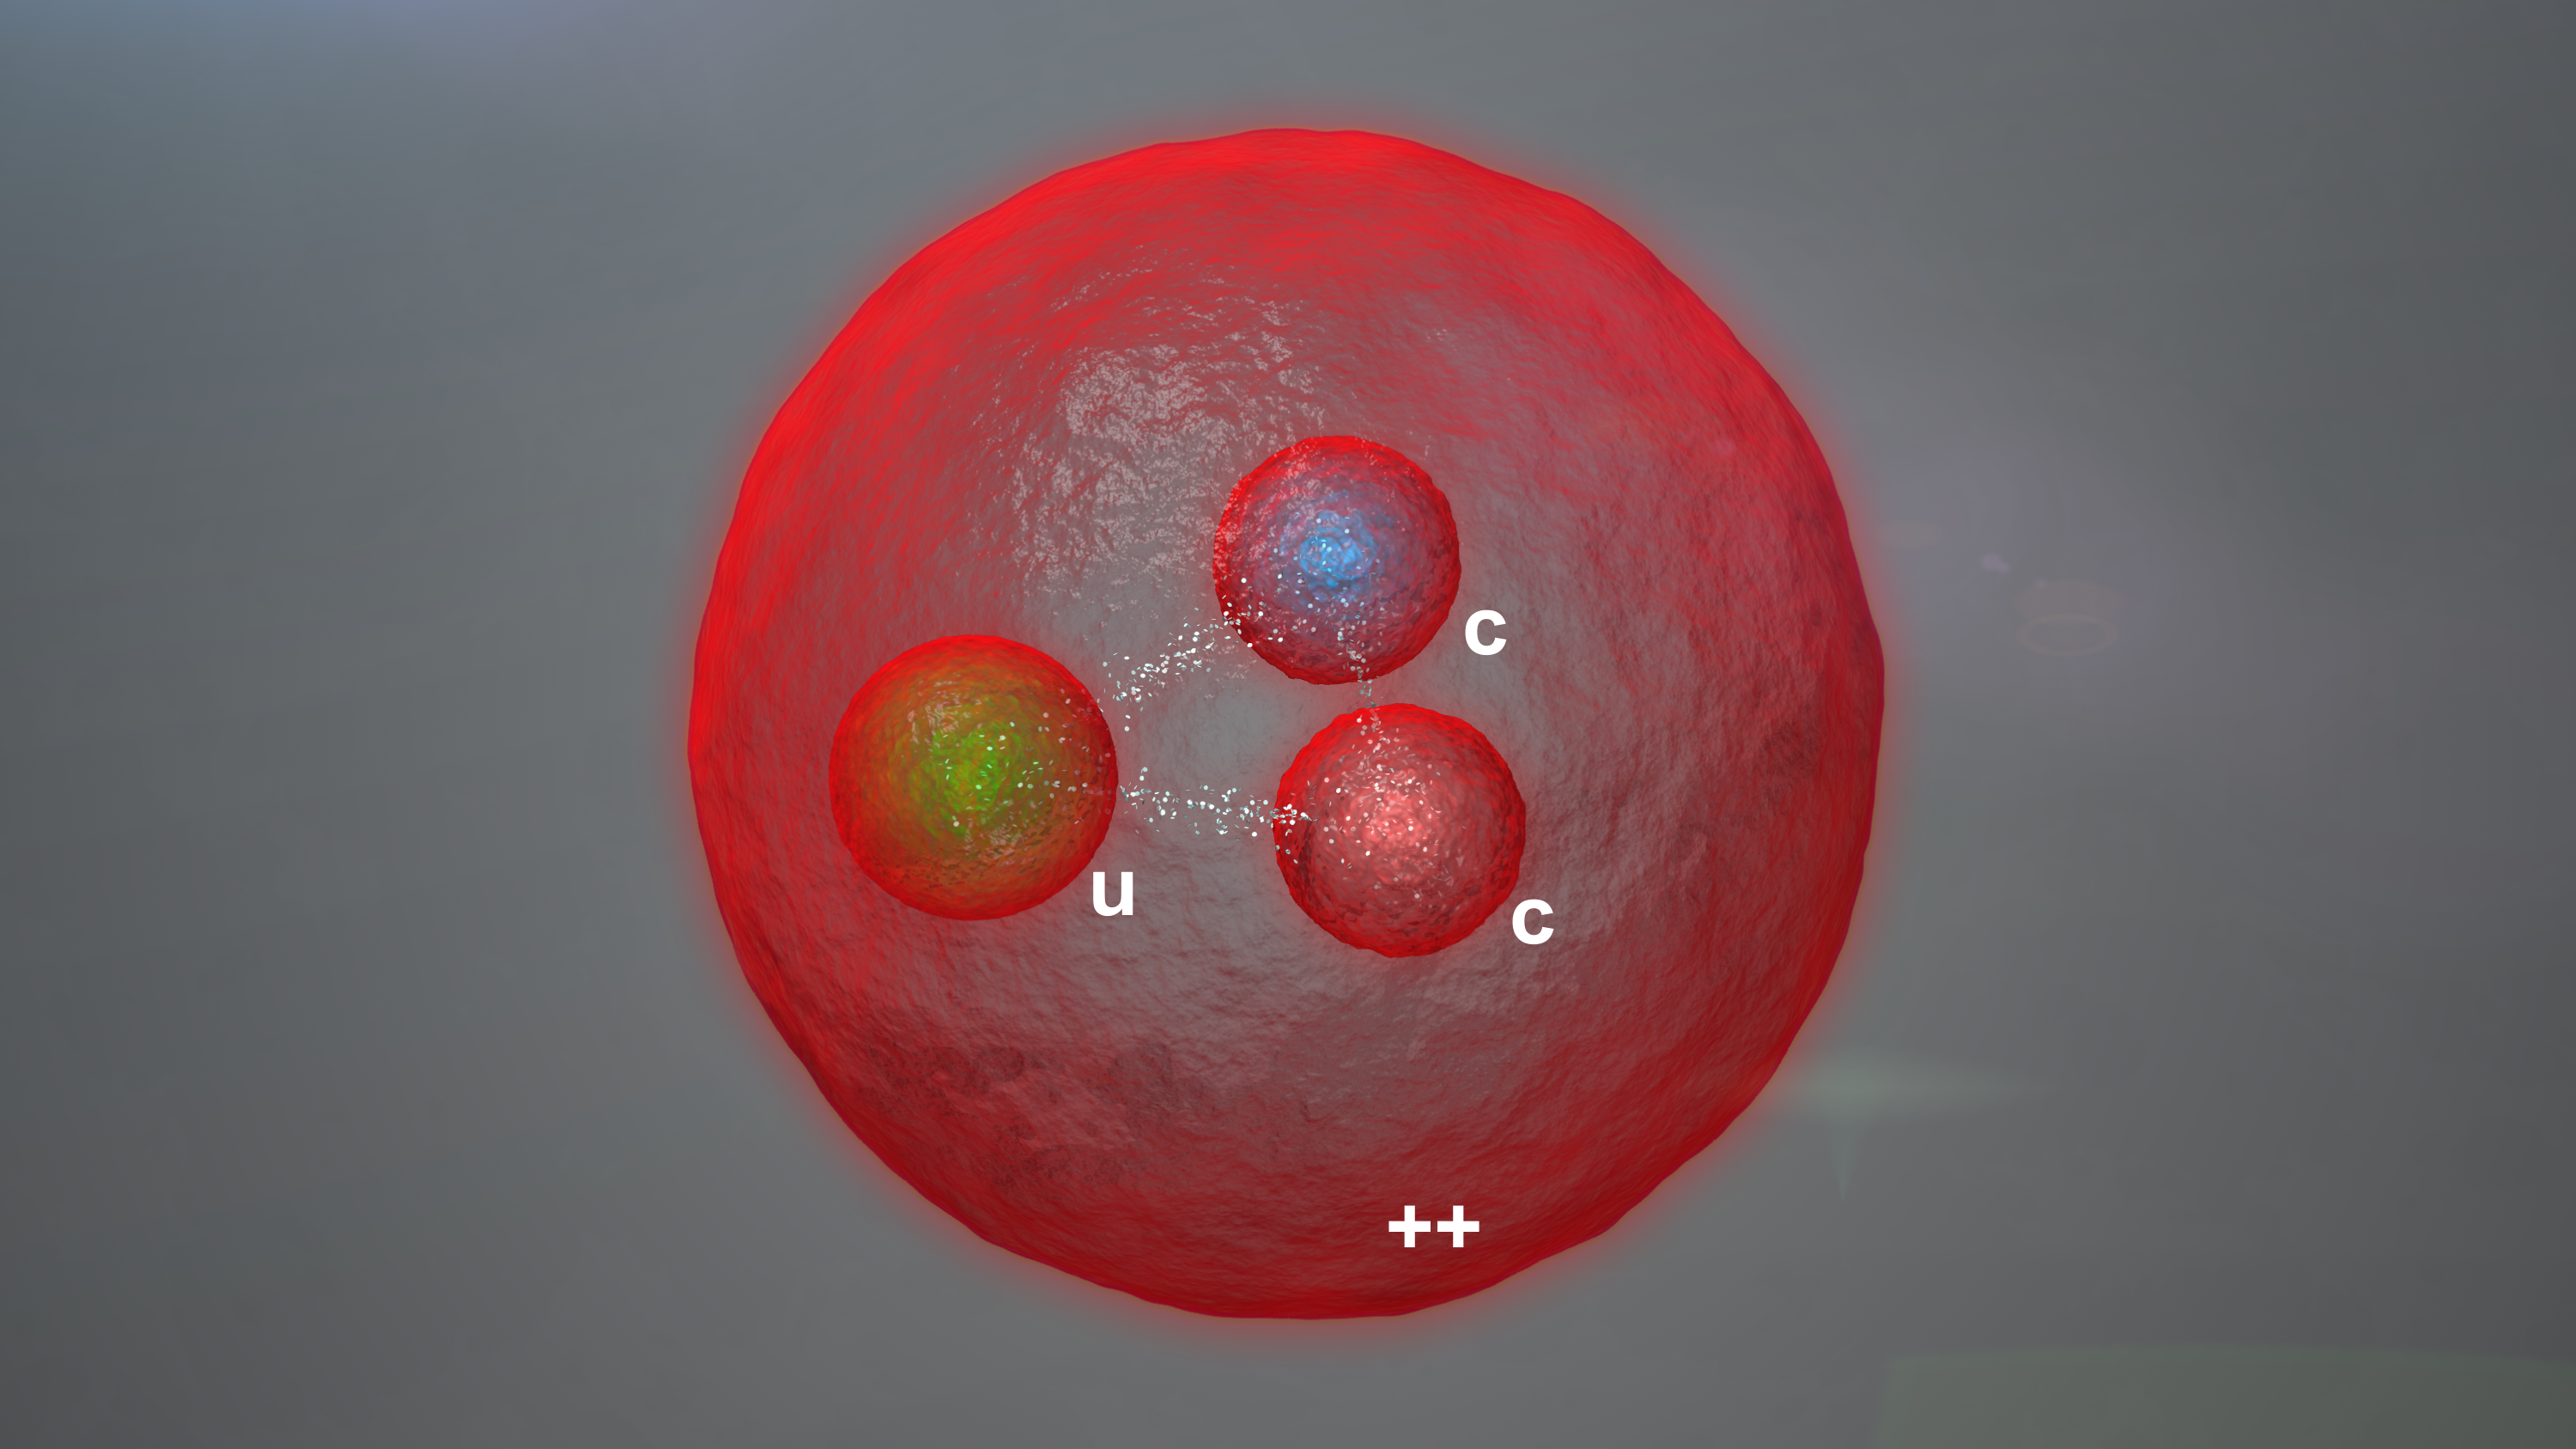 Representación de la nueva partícula observada por LHCb, que contiene dos quarks pesados. (Imagen: Daniel Dominguez / CERN)